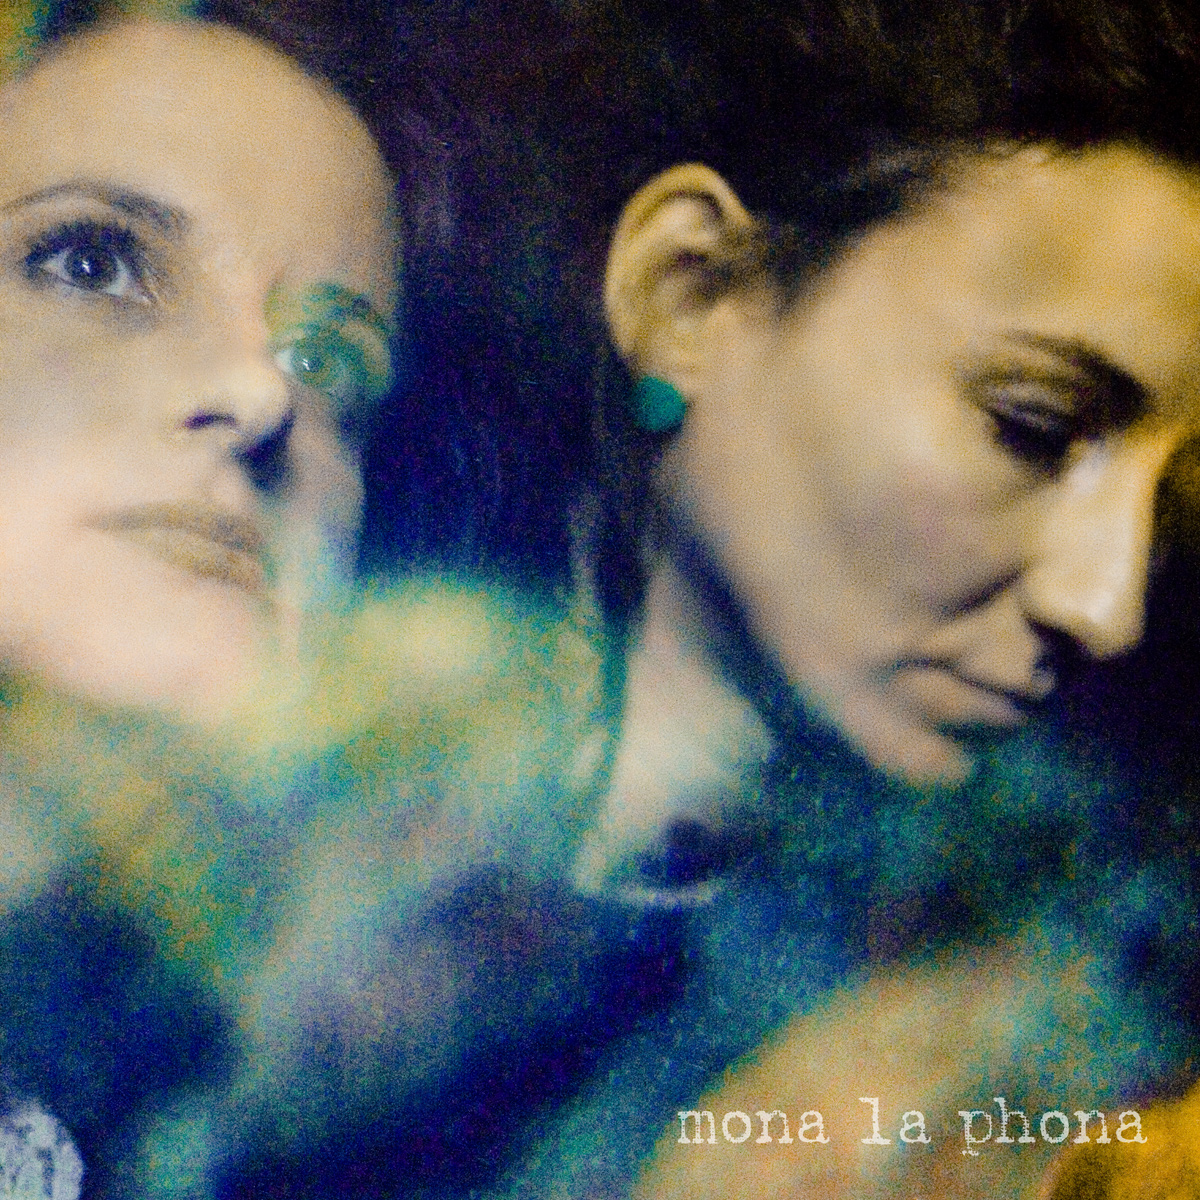 Mona La Phona – Glowing Seas